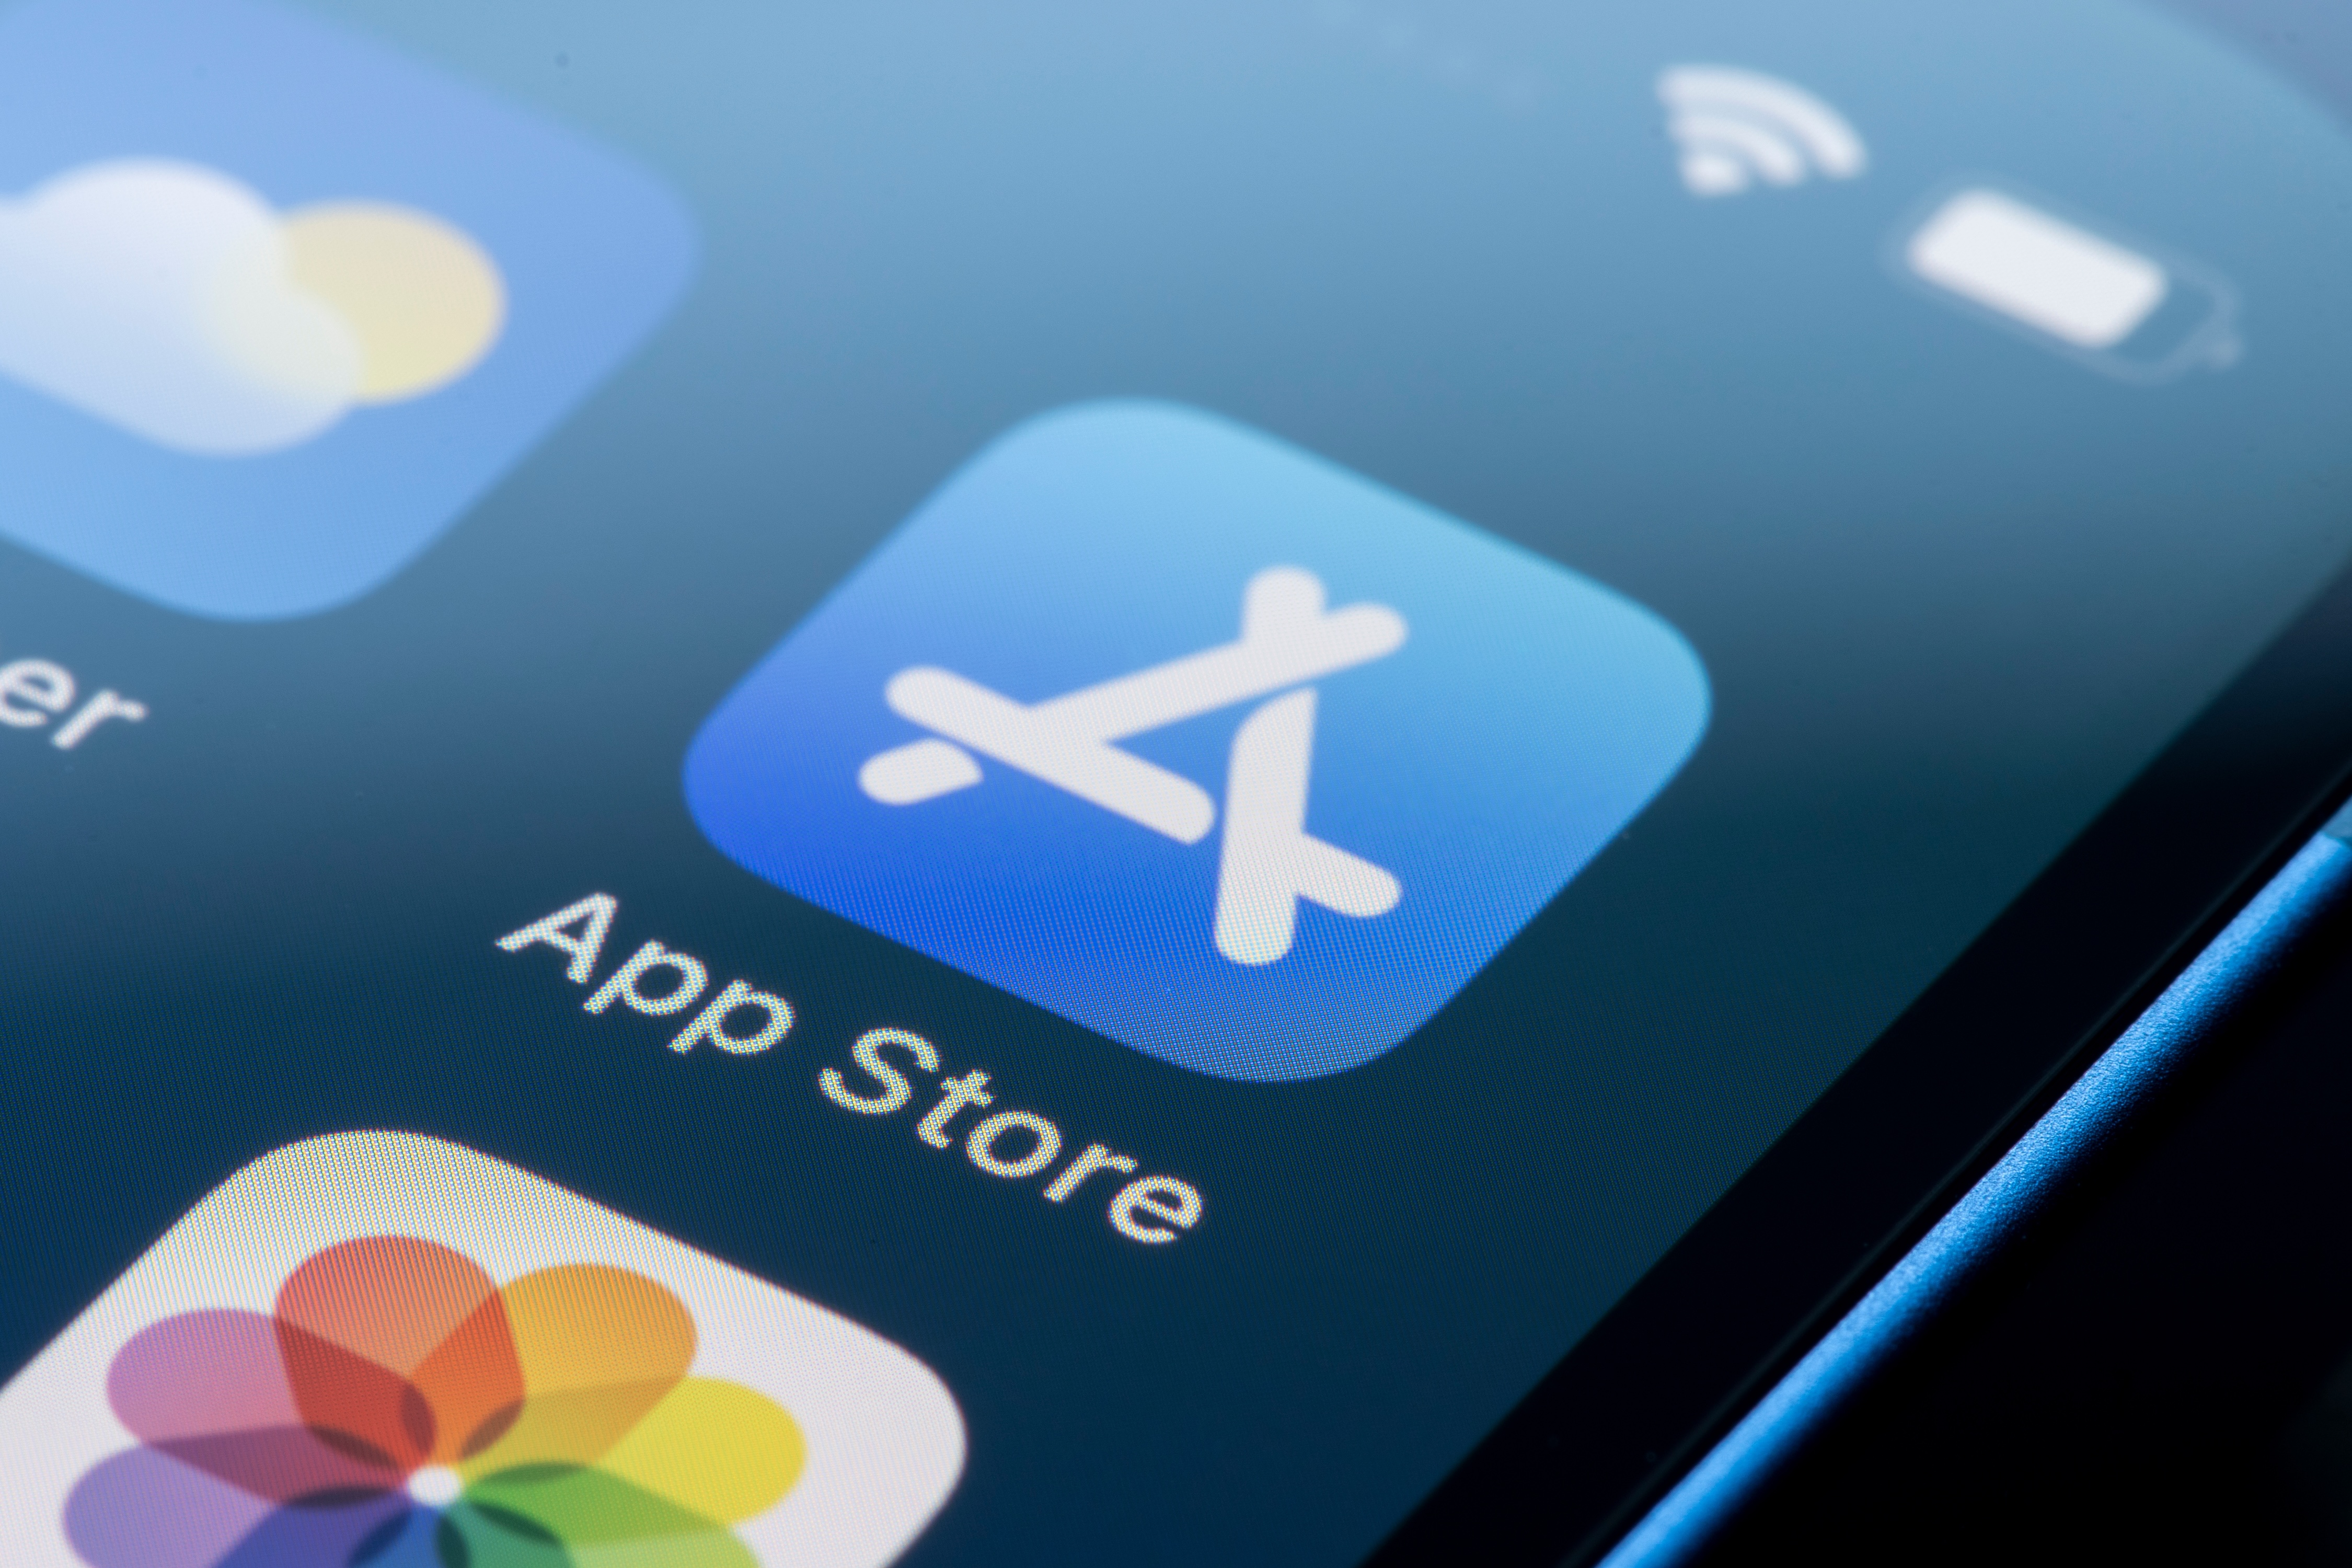 App Store : Apple veut éviter un procès à près d'1 milliard d'euros au Royaume-Uni